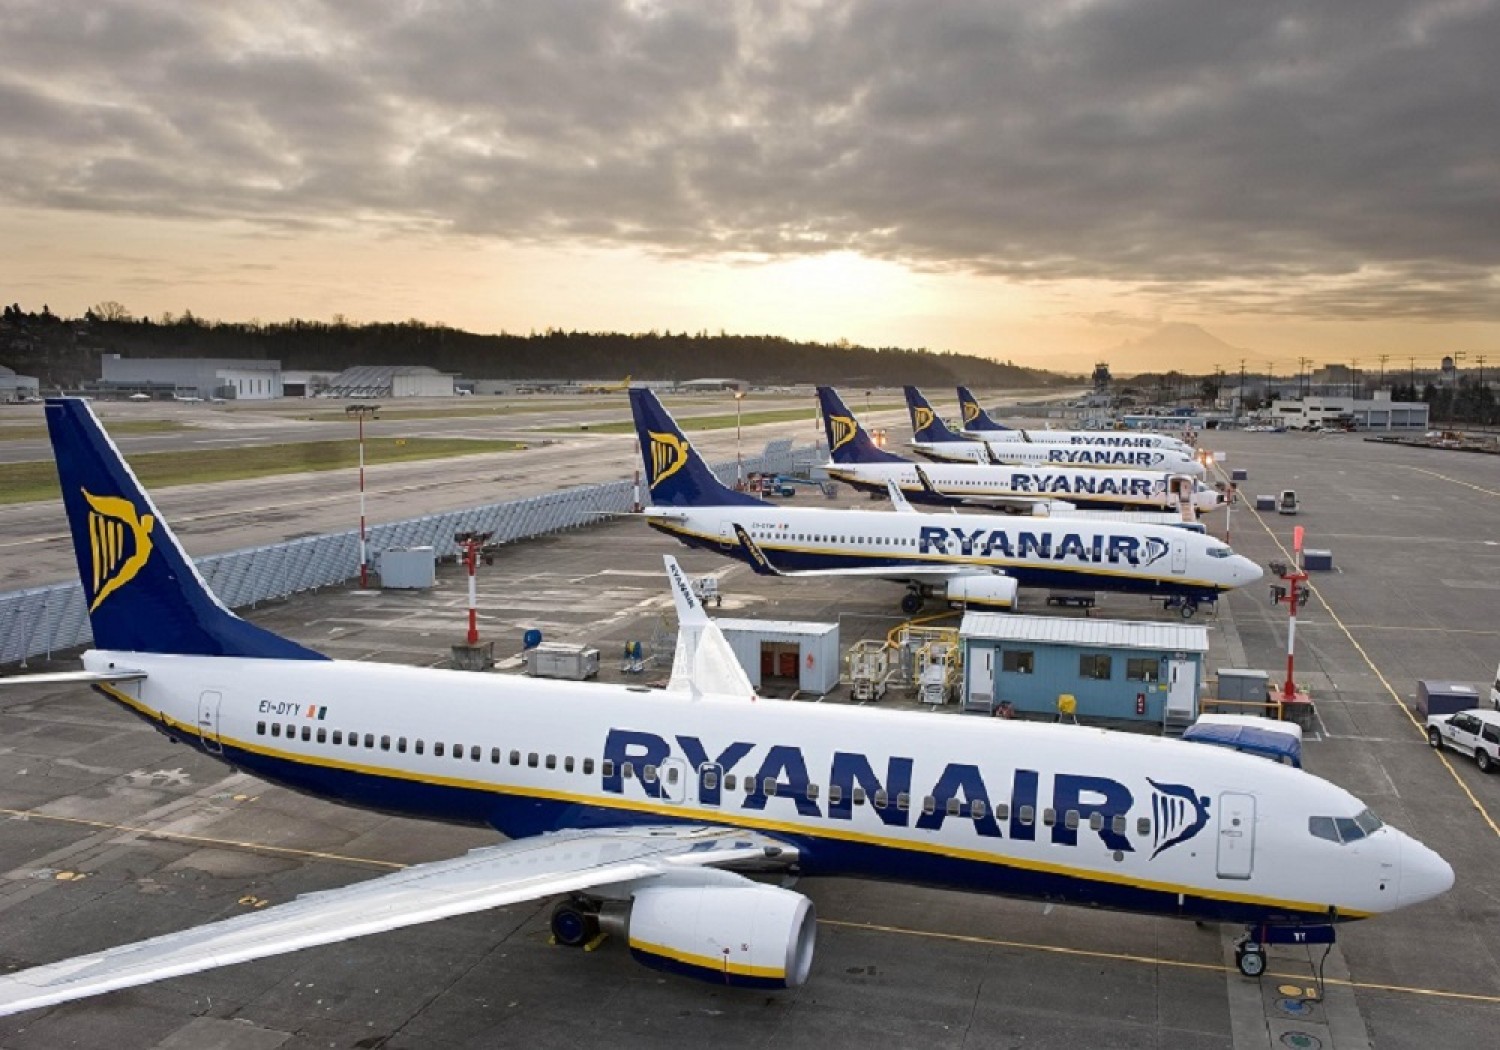 ΔΕΝ ΞΑΝΑΓΙΝΕ!!! Αυτό είναι το δρομολόγιο που ανακοίνωσε η Ryanair- Τιμή ΕΚΠΛΗΞΗ ΓΙΑ ΝΑ ΤΟ ΓΙΟΡΤΑΣΕΙ ME ΤΟ ΚΟΙΝΟ